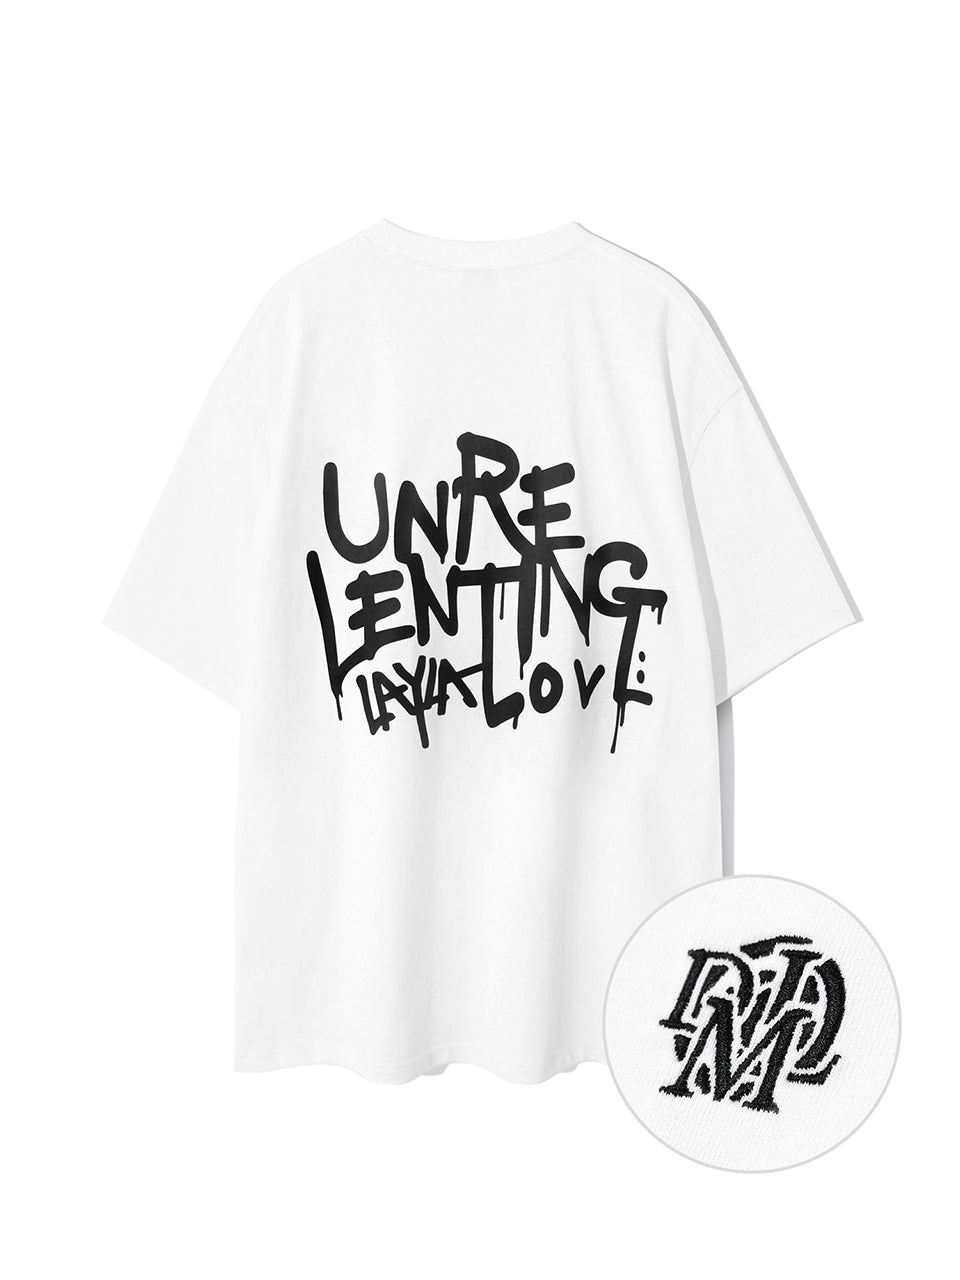 アンリレンティンググラフィティ半袖Tシャツ / Unrelenting Graffiti Short Sleeve T-shirt T79  WhiteDIAMOND LAYLA/ {{ category }}